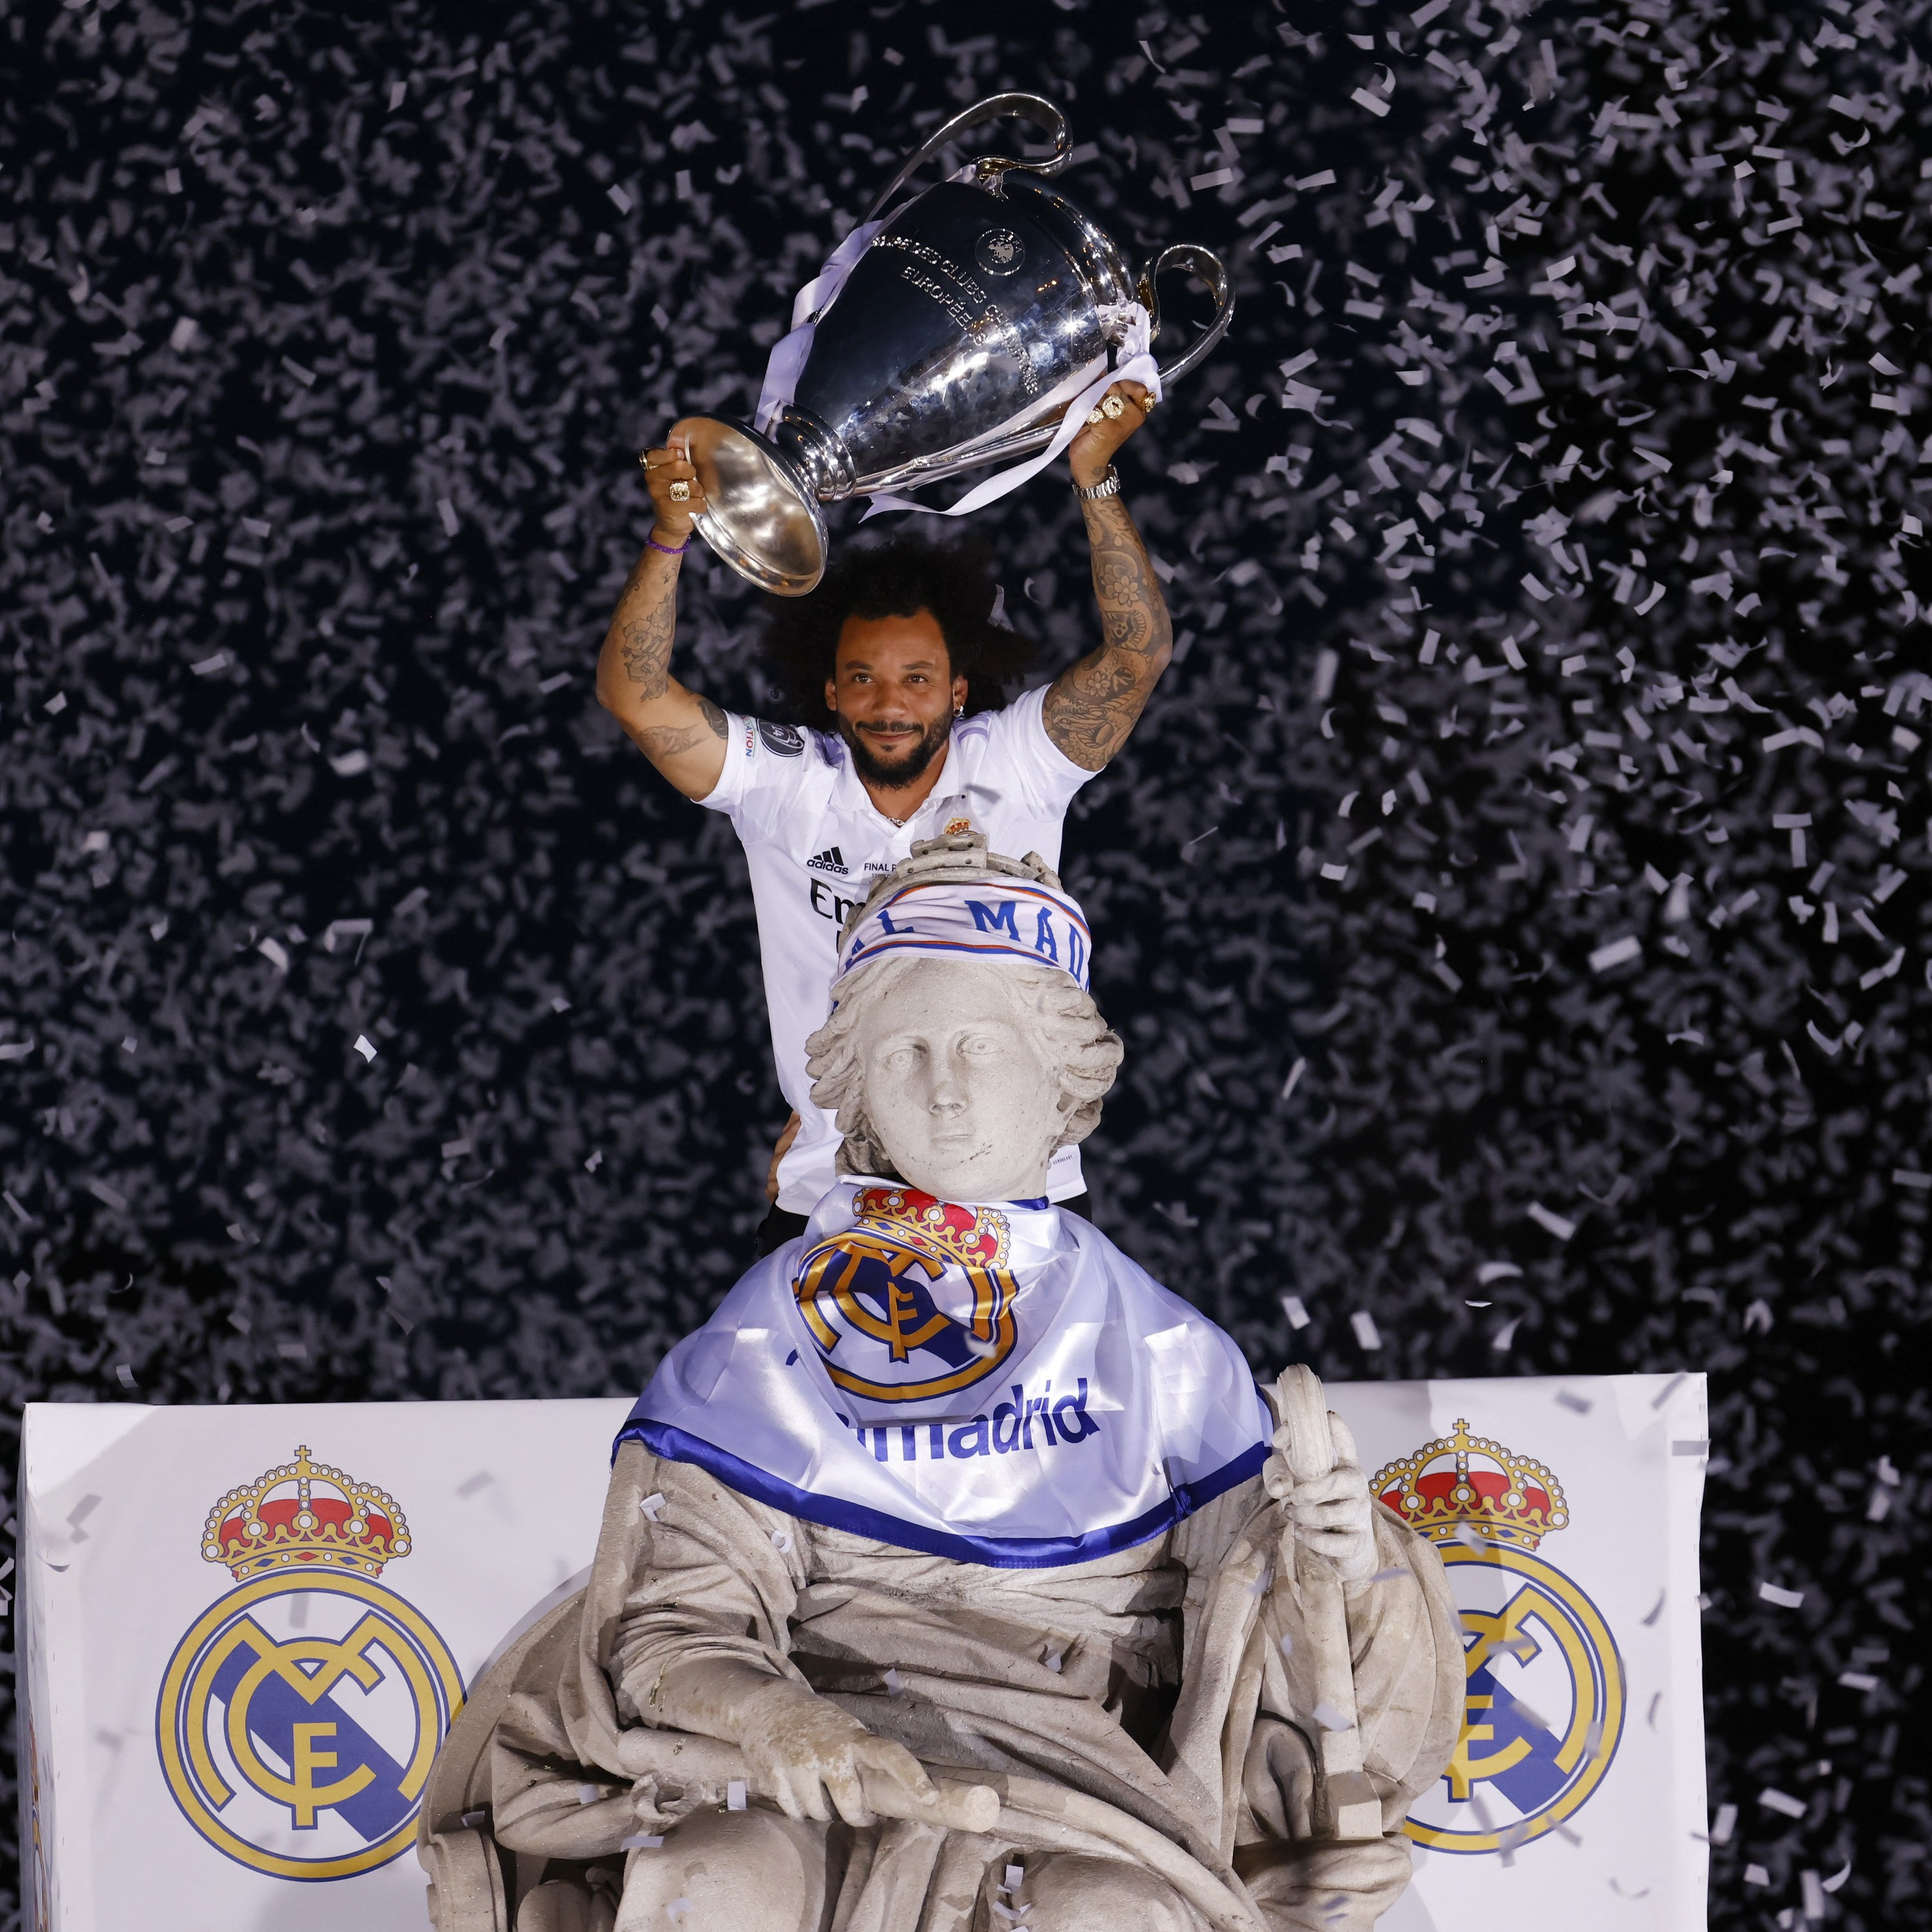 Hoje Sim #153 - O gigante Real: o tamanho e a mística do Real Madrid (Com Júlio Baptista e Sávio)